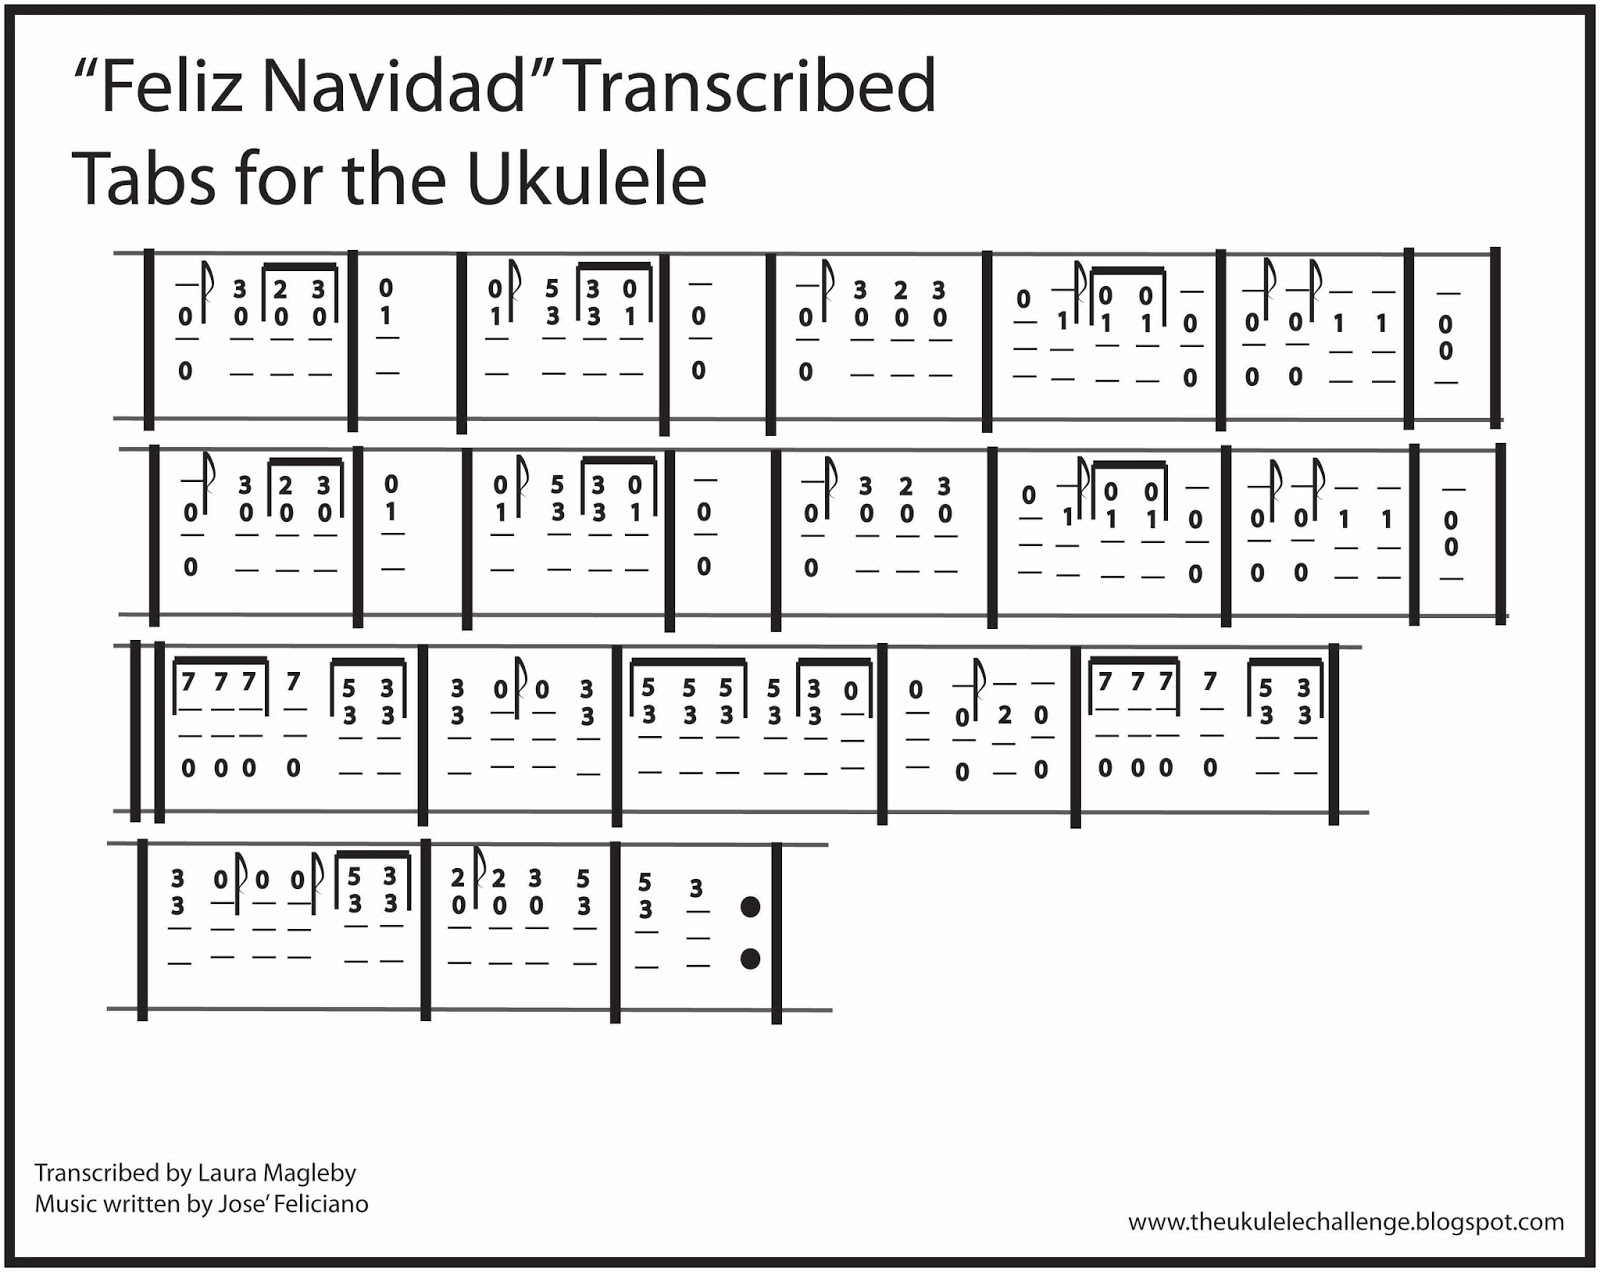 The Ukulele Challenge: Transcribed for the Ukulele